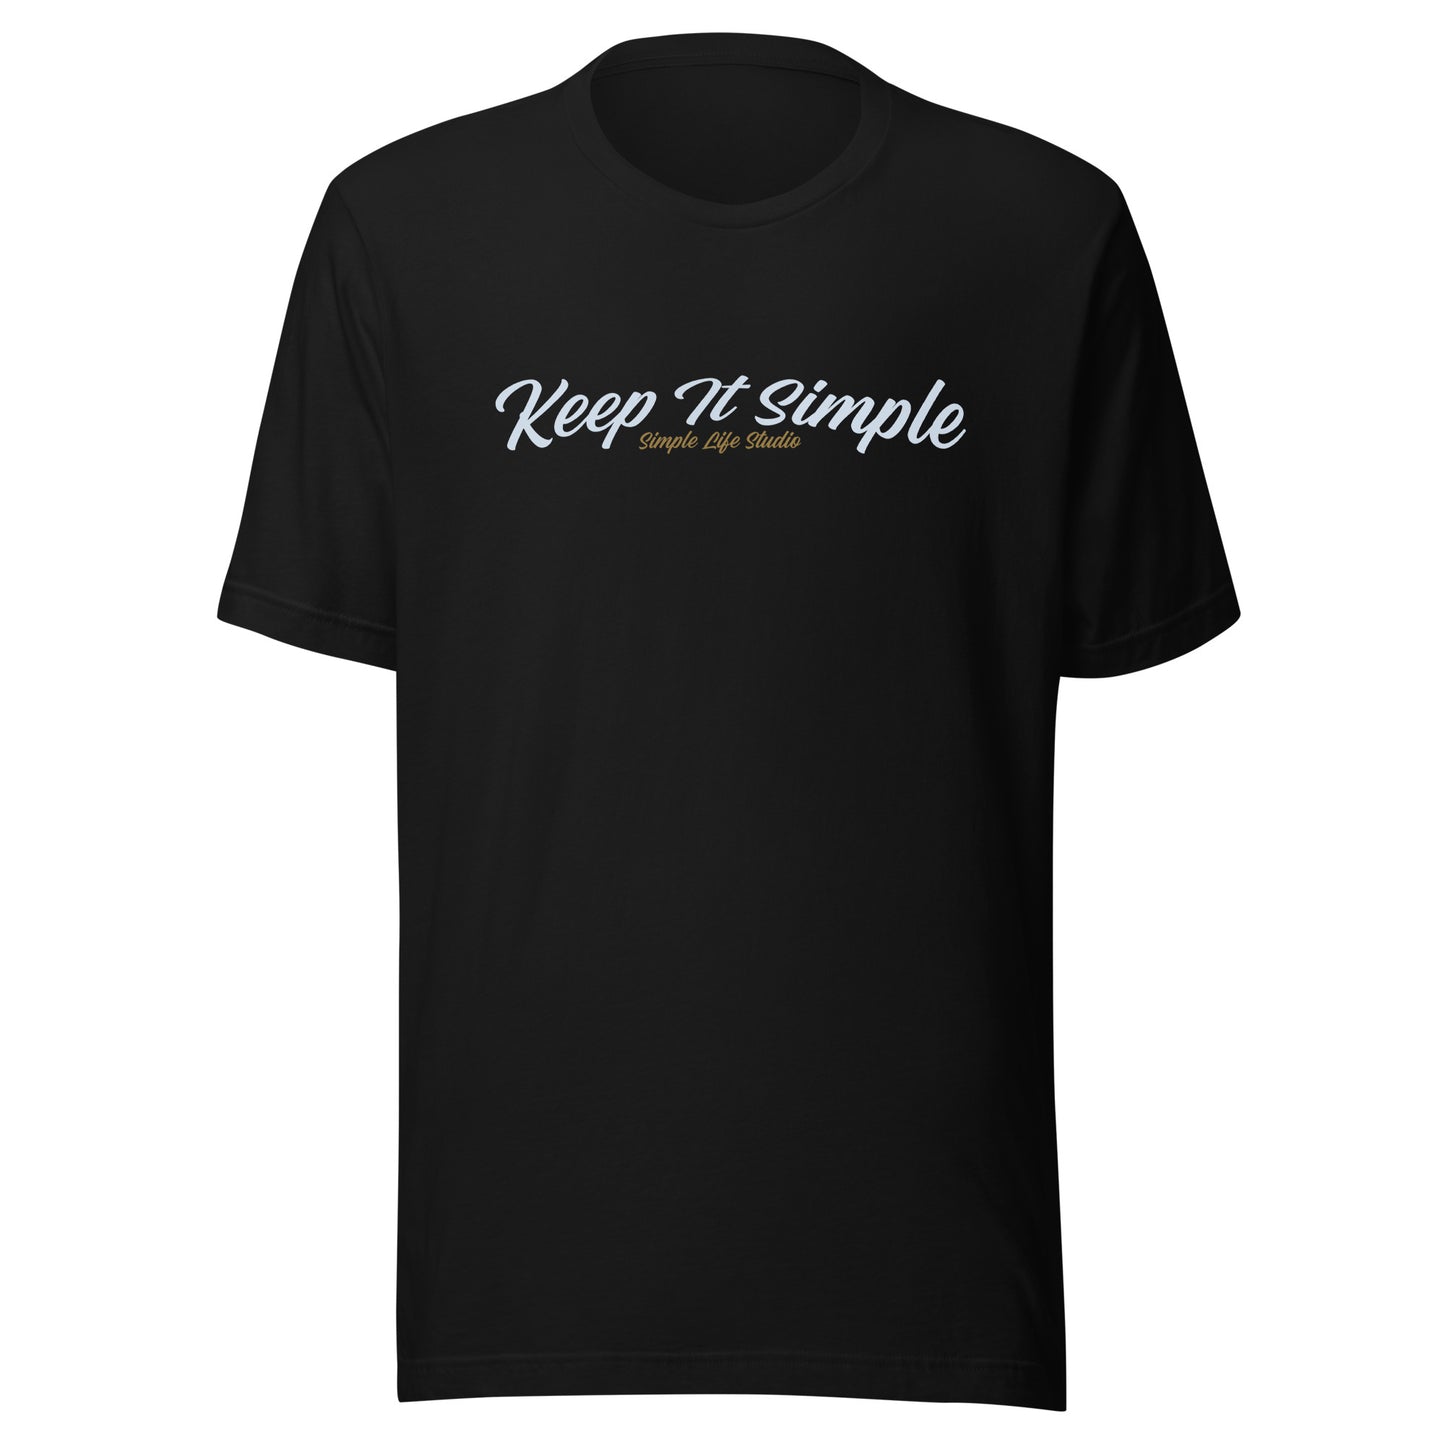 Unisex t-shirt "Keep It Simple"